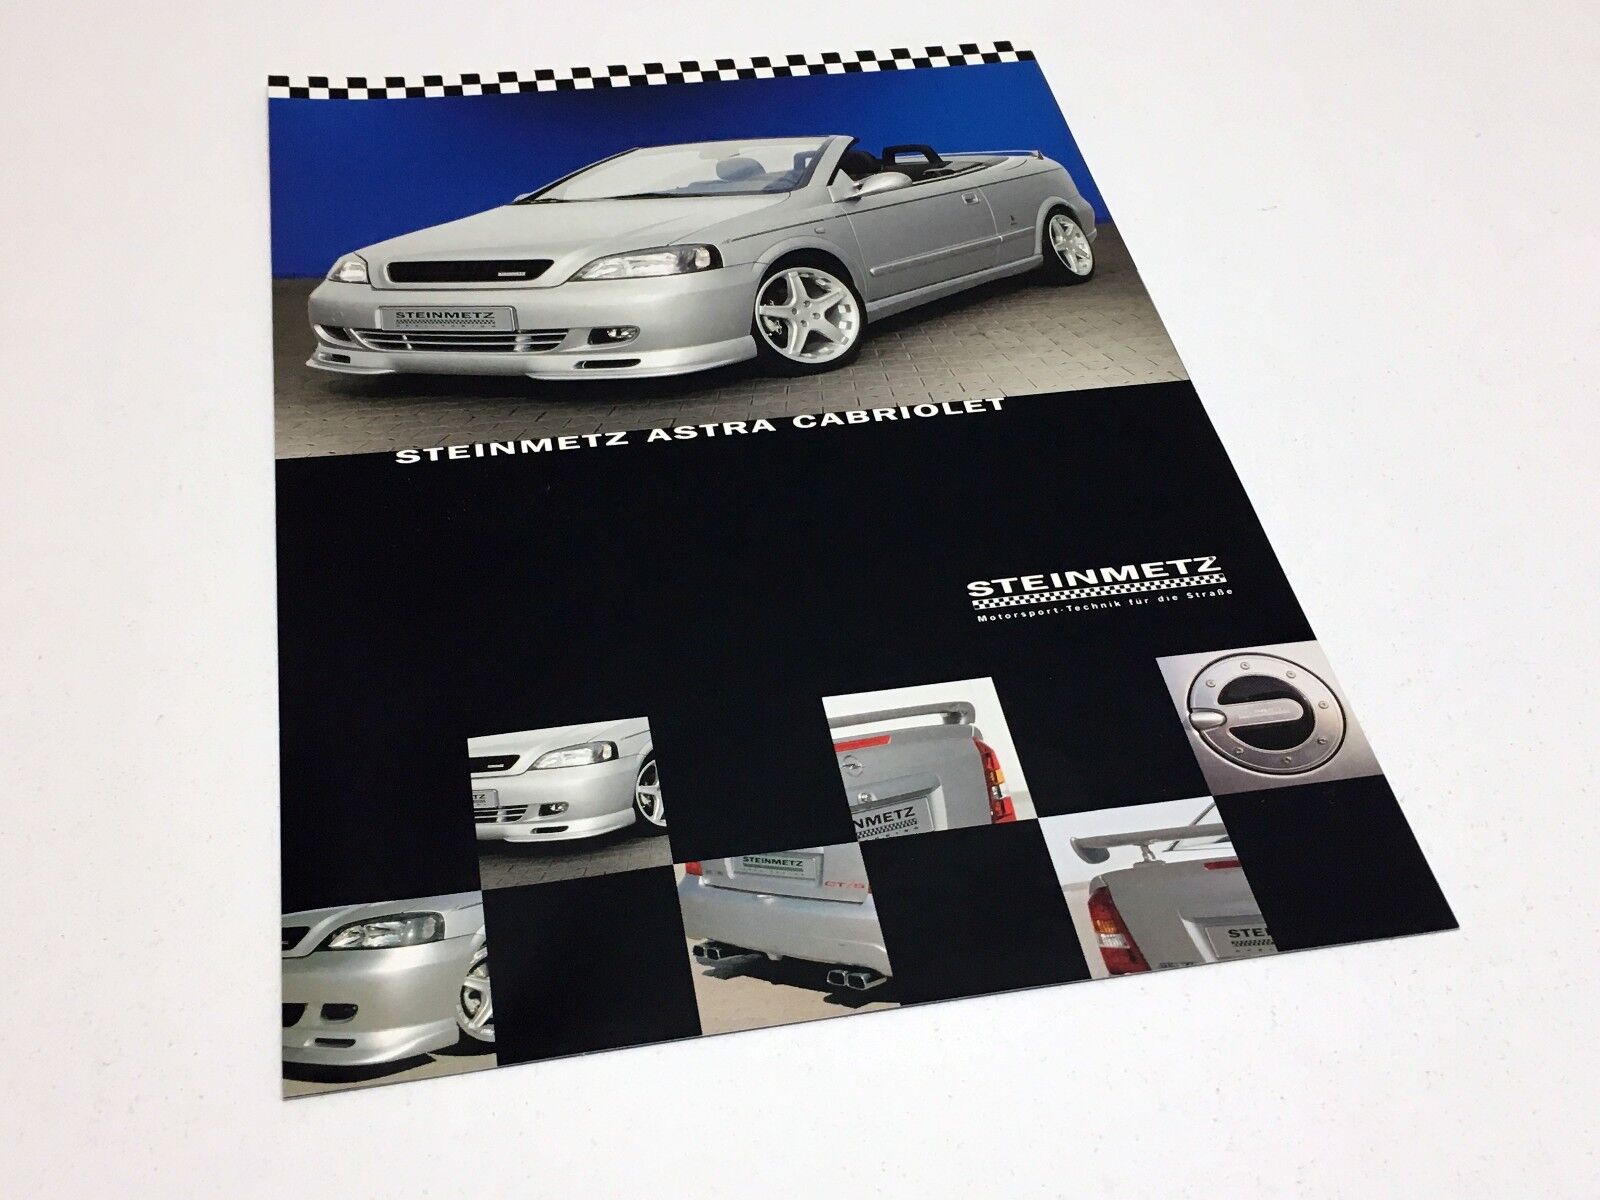 2001 Steinmetz Opel Astra Cabriolet Accessories Information Sheet Brochure